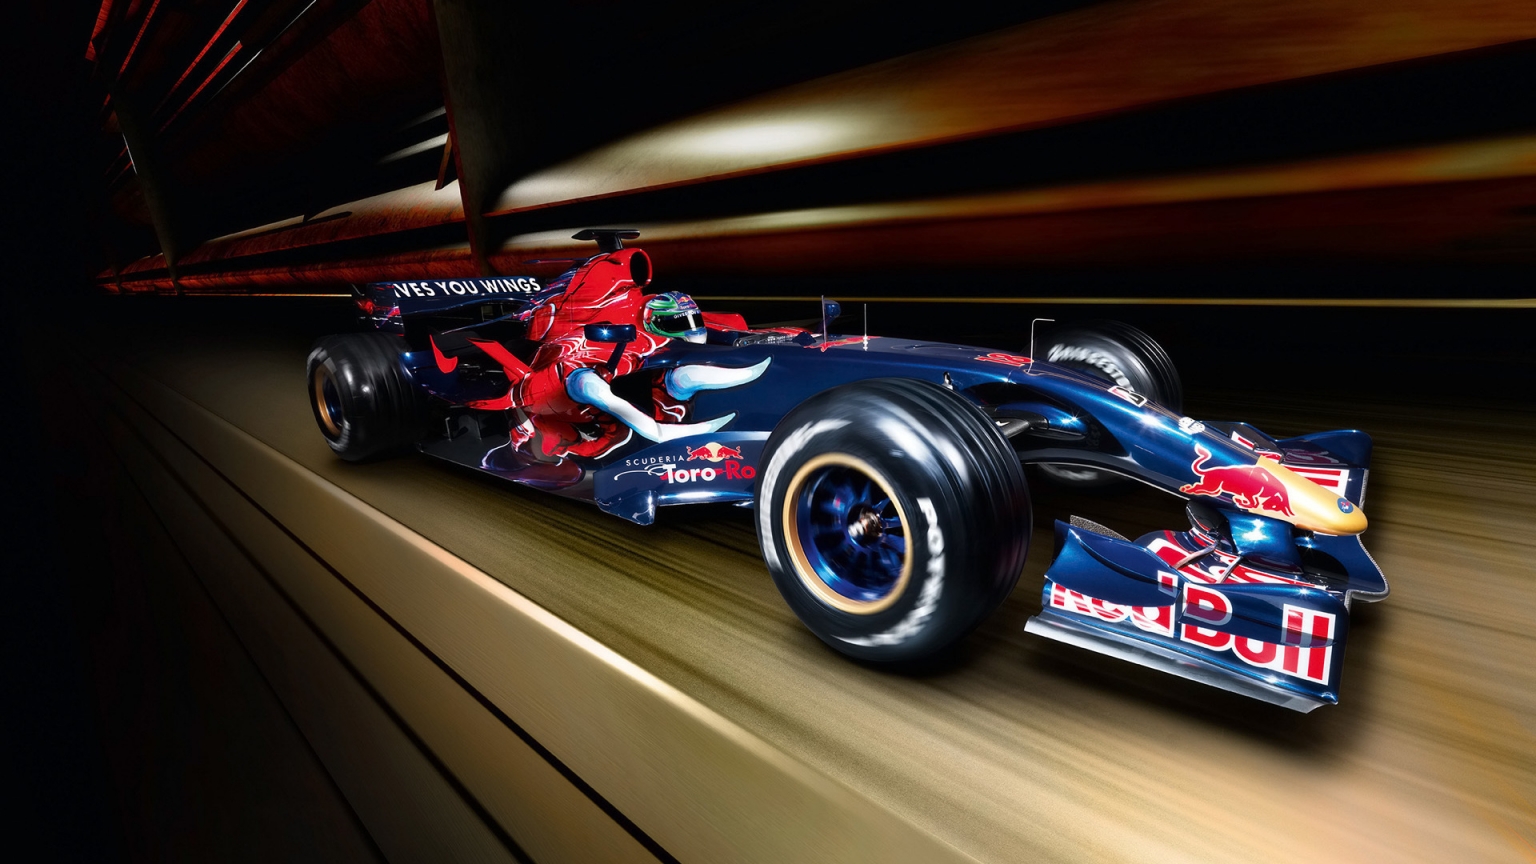 Formula 1 Red Bull 2007 for 1536 x 864 HDTV resolution